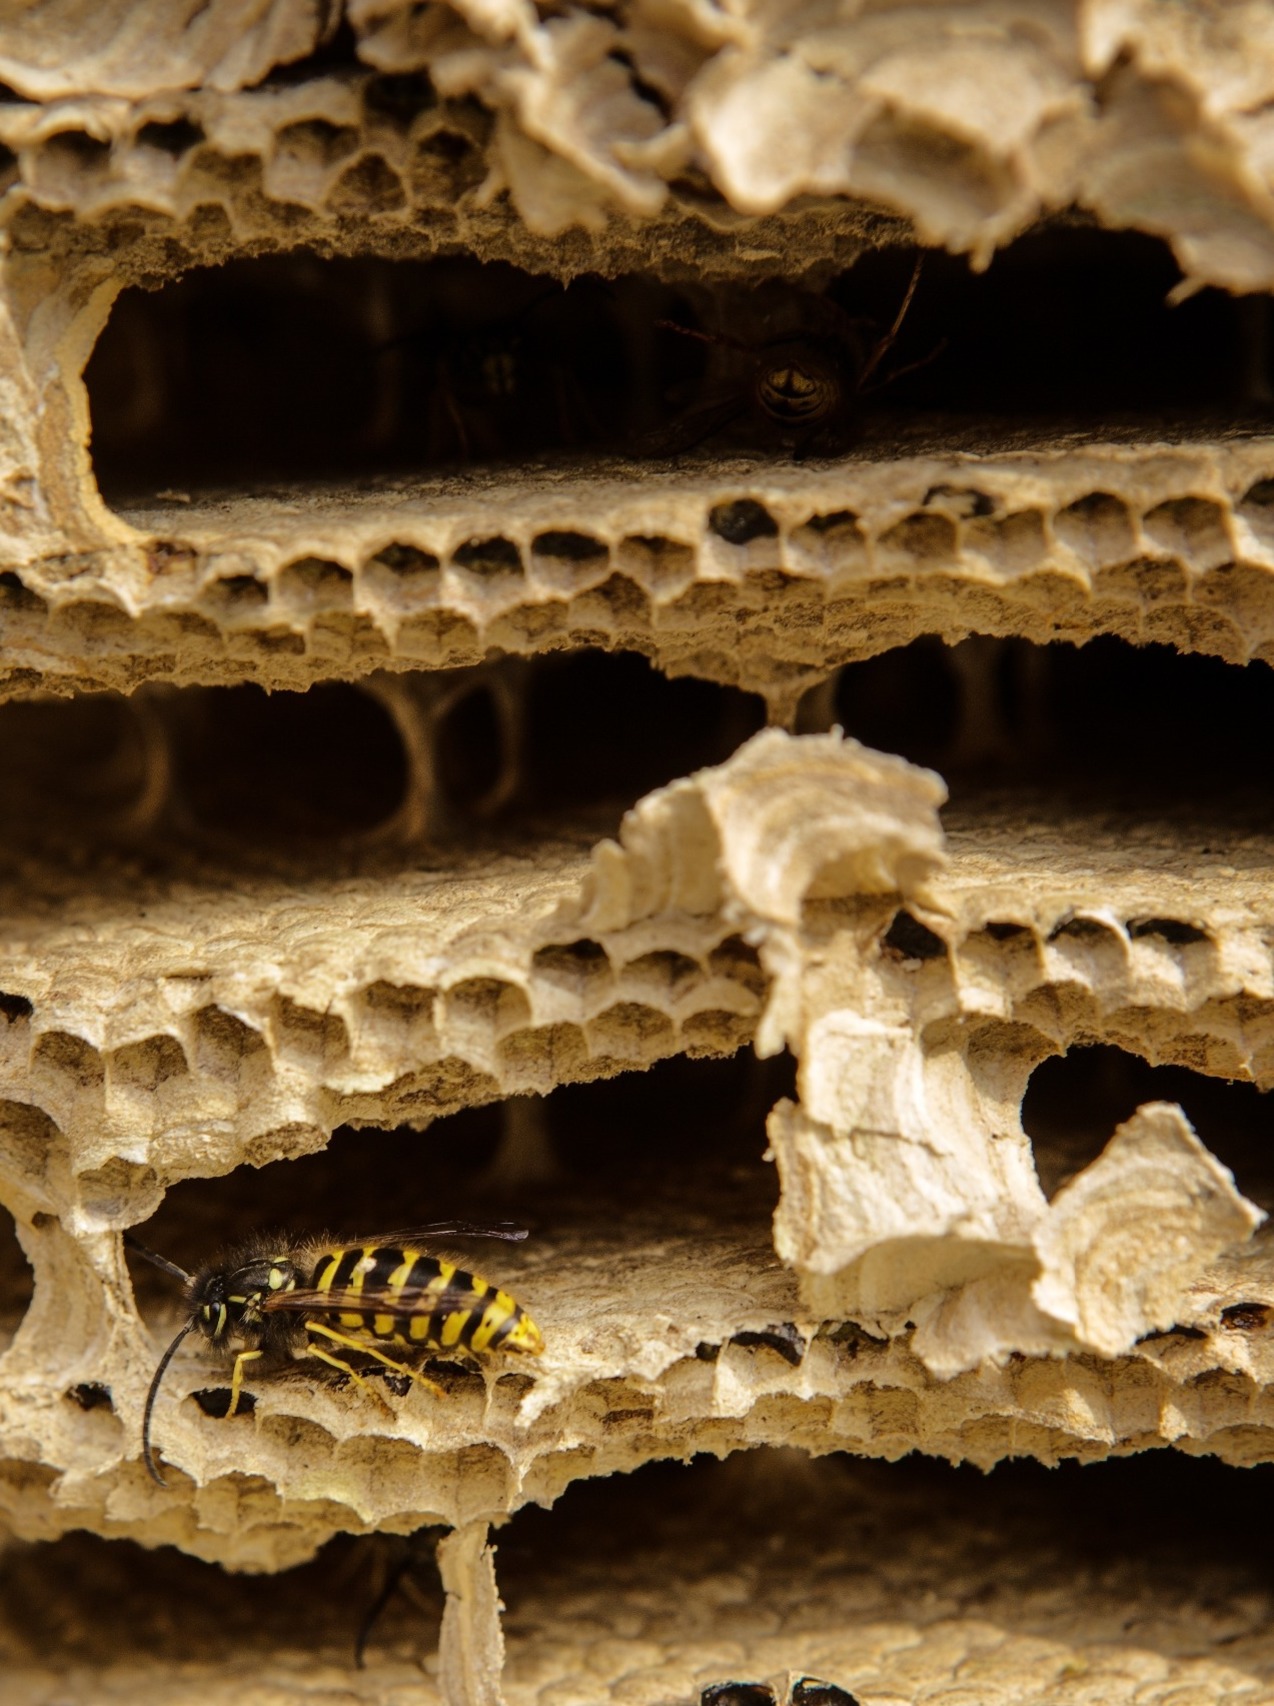 Wasp nest interior